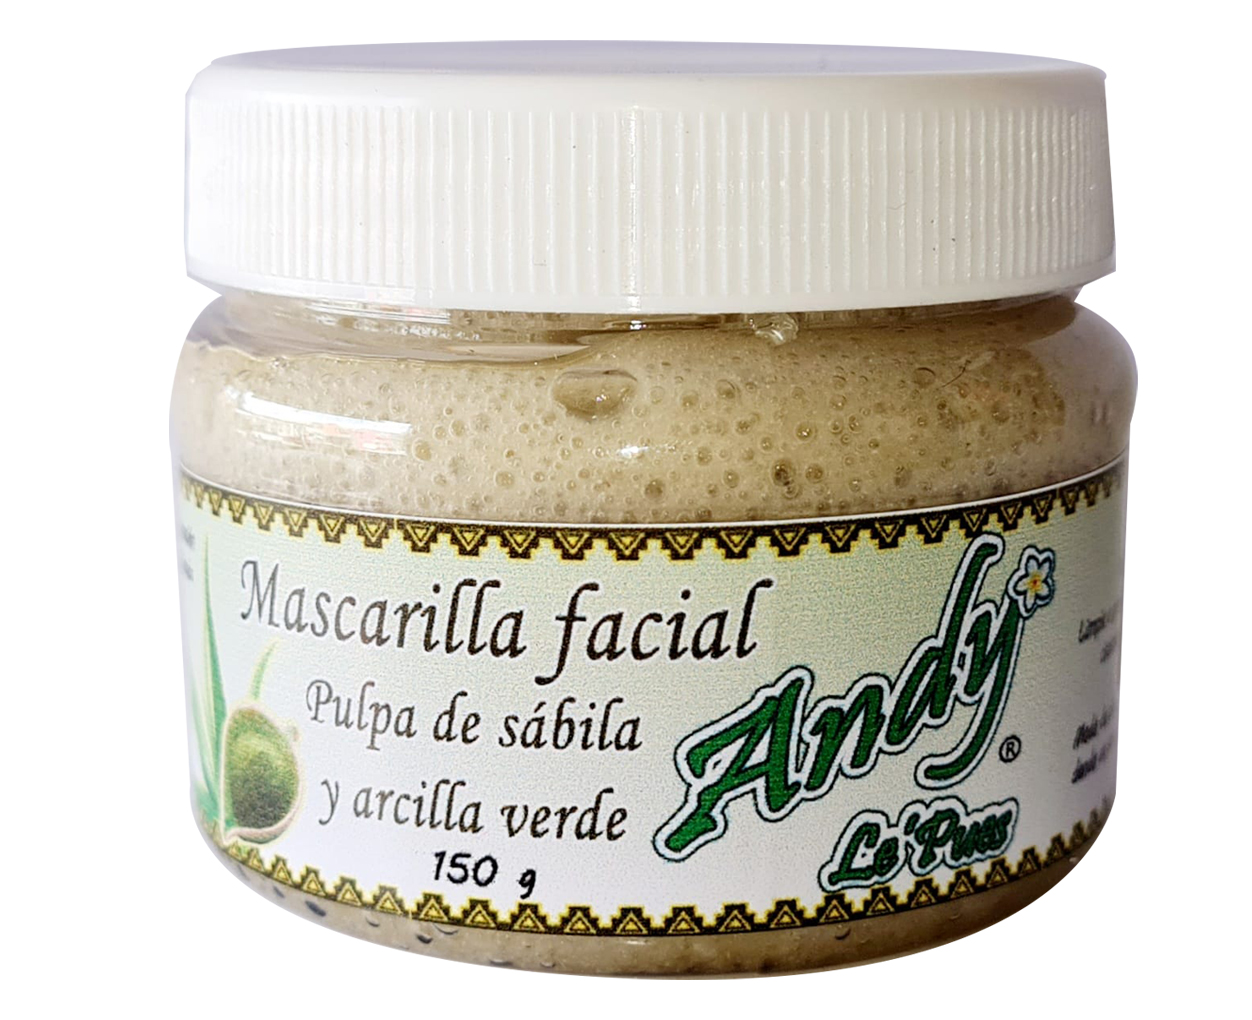 Mascarilla facial limpiadora pulpa de sábila y arcilla verde – Andy Le'Pues